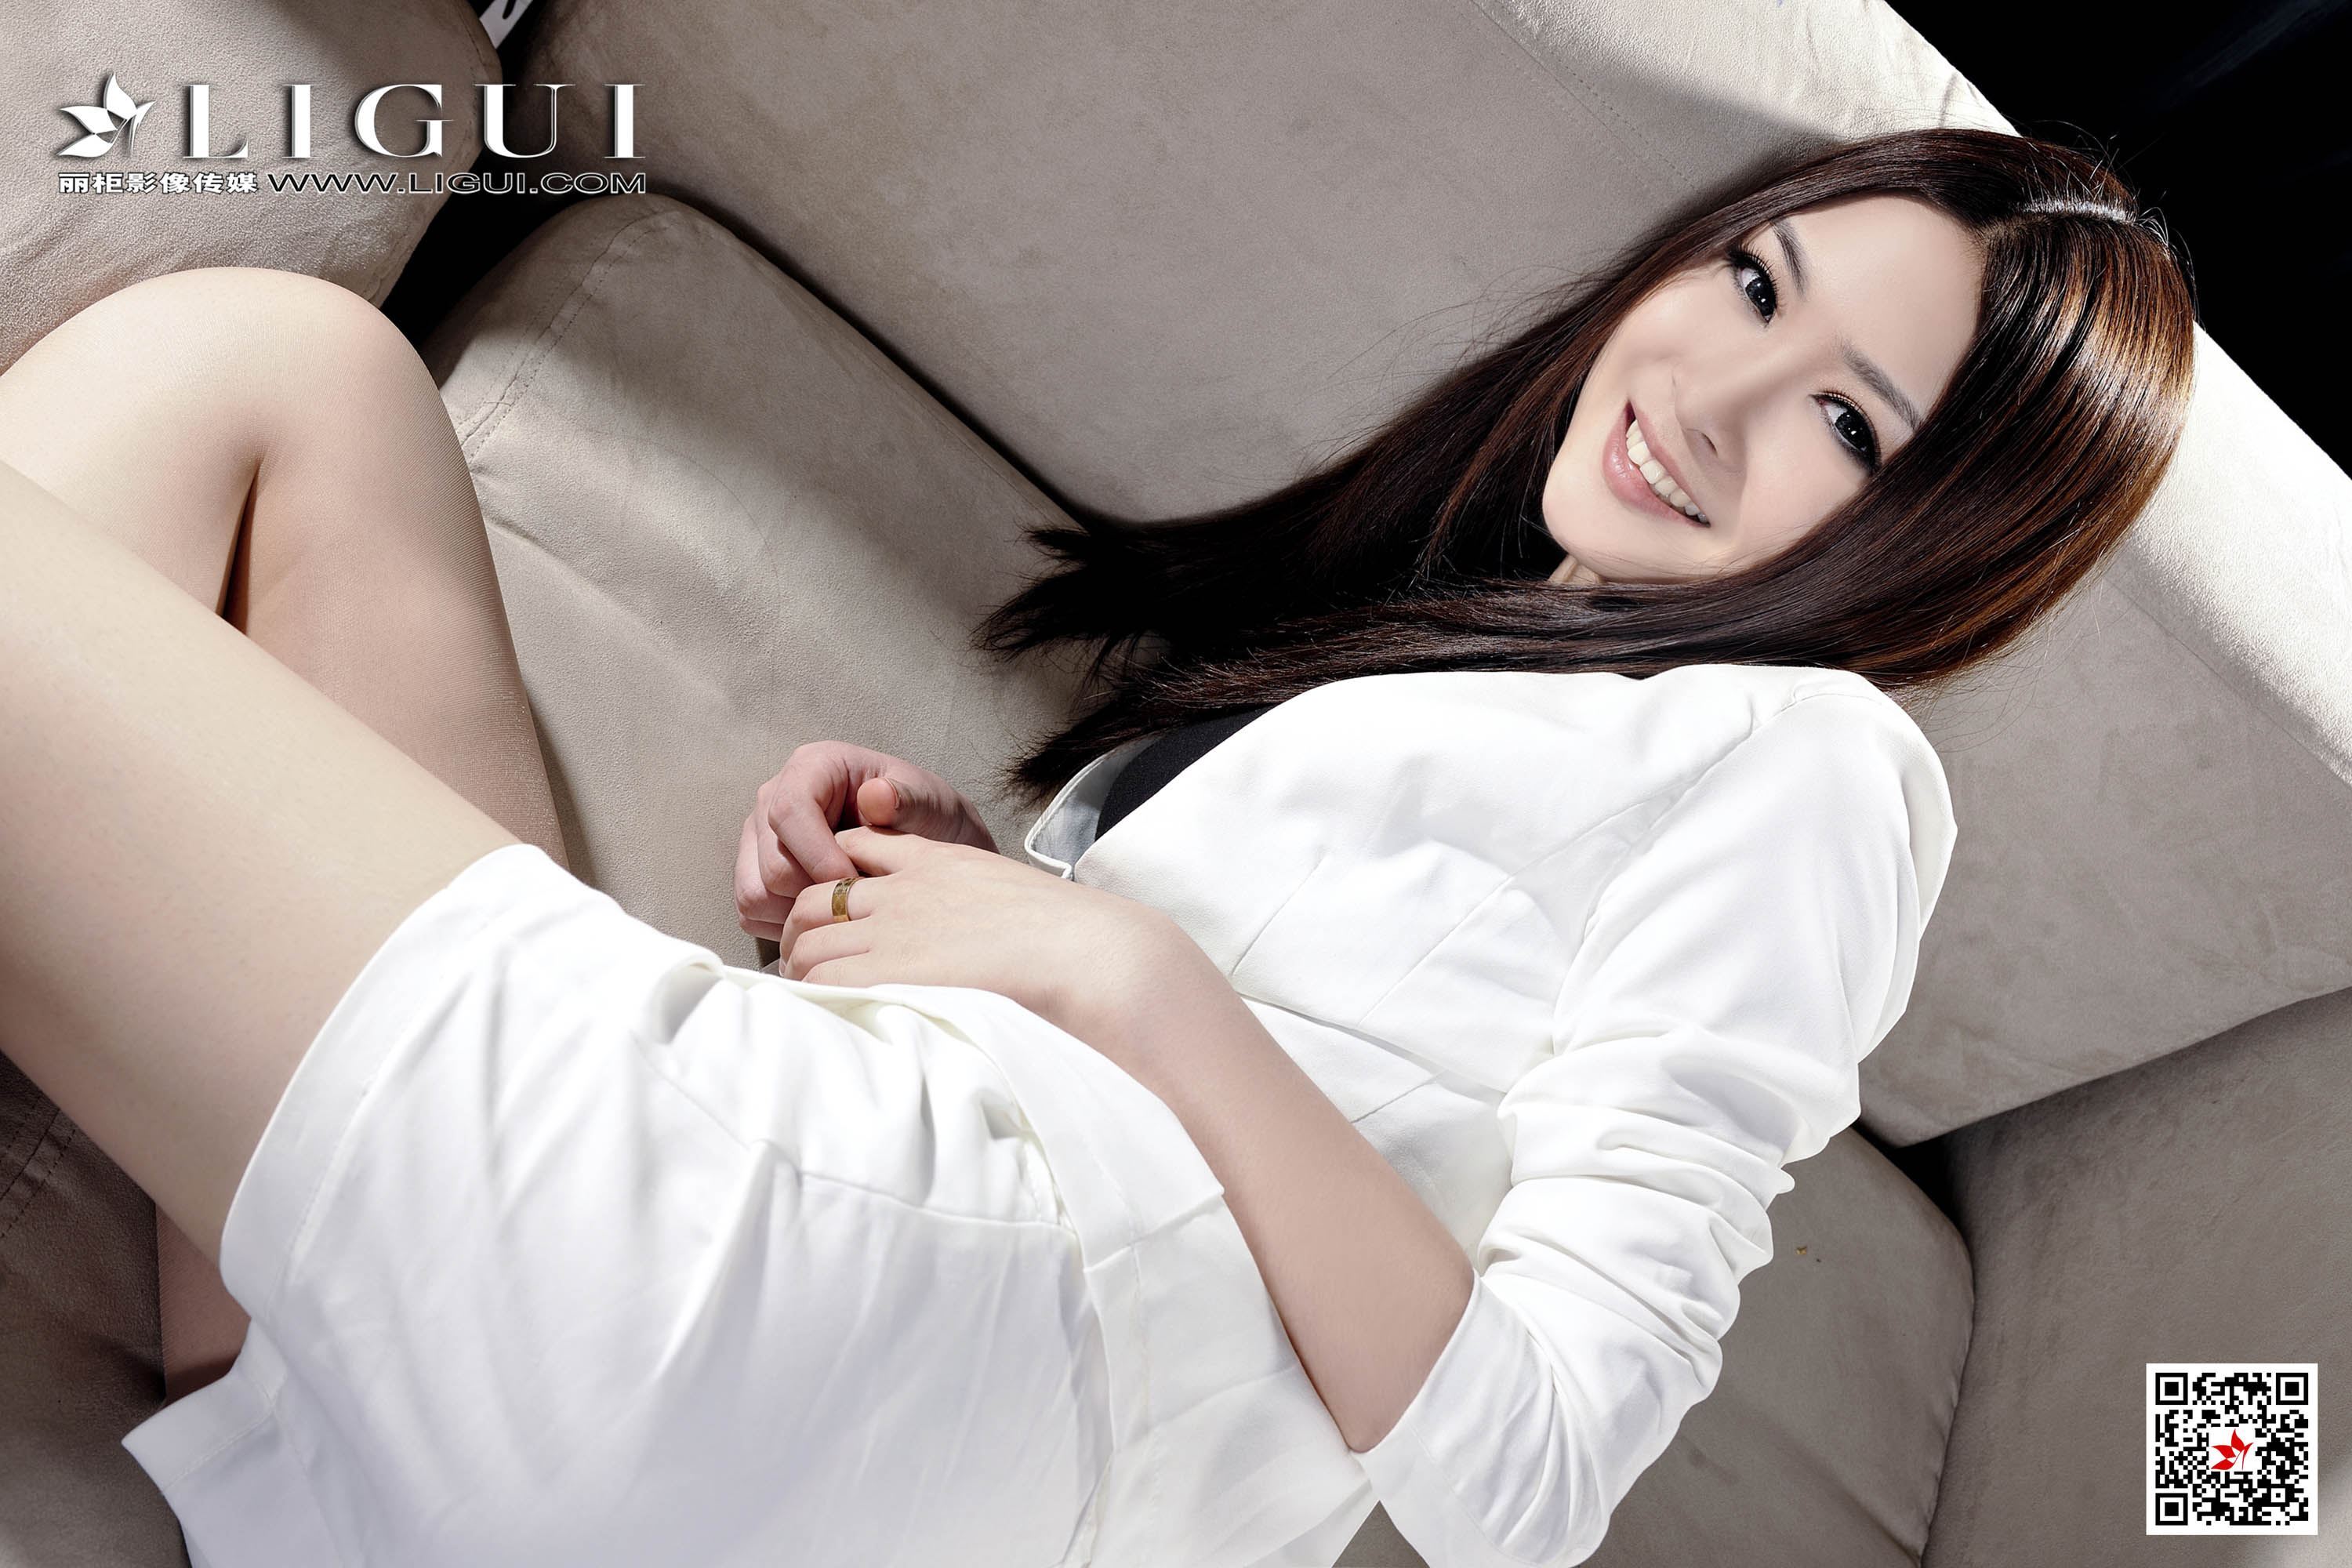 Li Gui Li cabinet 2020.11.29 network beauty model Yuner